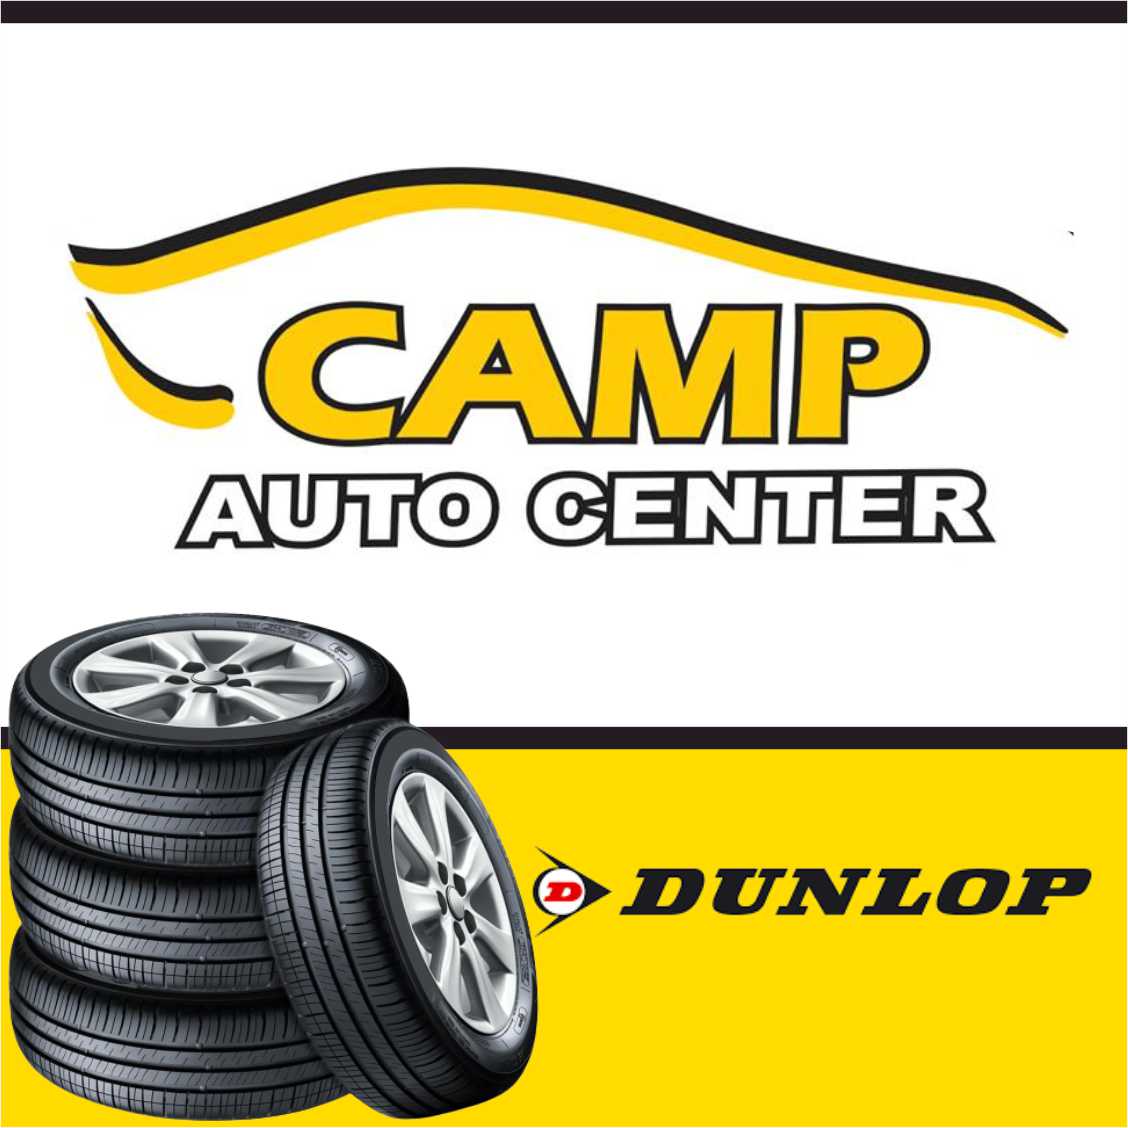 Camp Auto Center